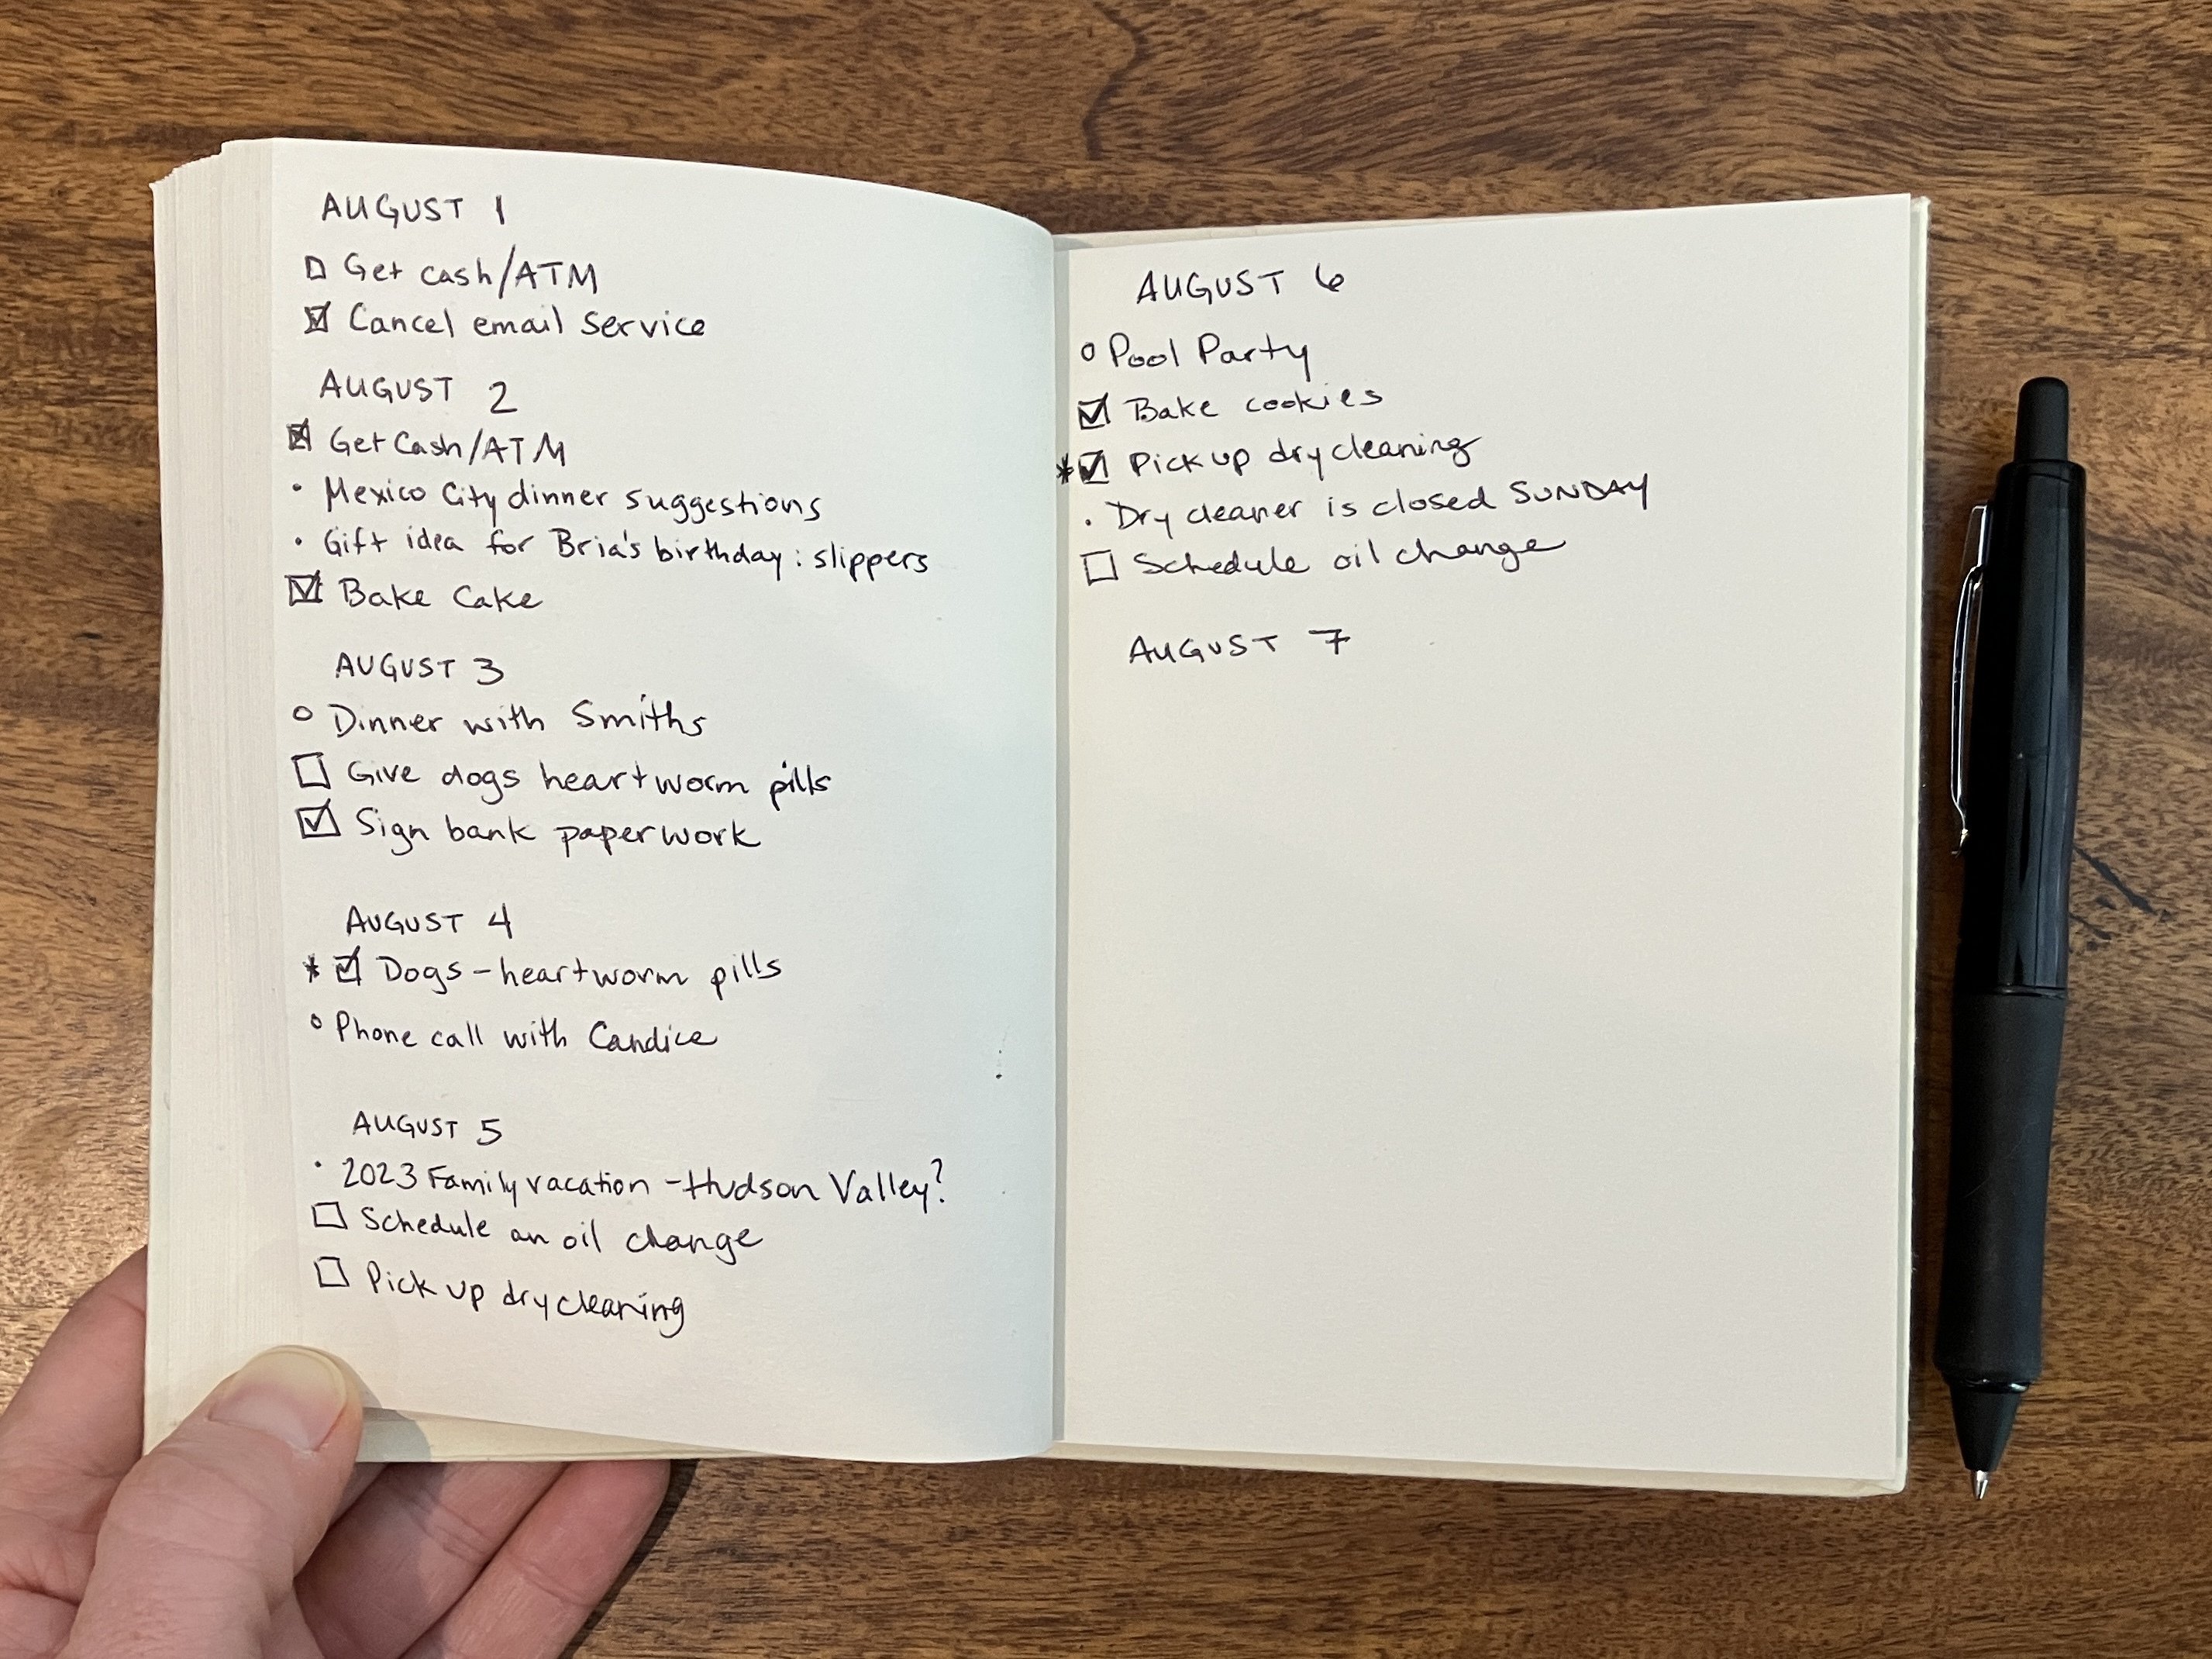 Un cuaderno de papel abierto en una extensión de páginas con cada día del mes escrito y debajo de él tareas, eventos e ideas escritas usando el Método Bullet Journal de marca registrada